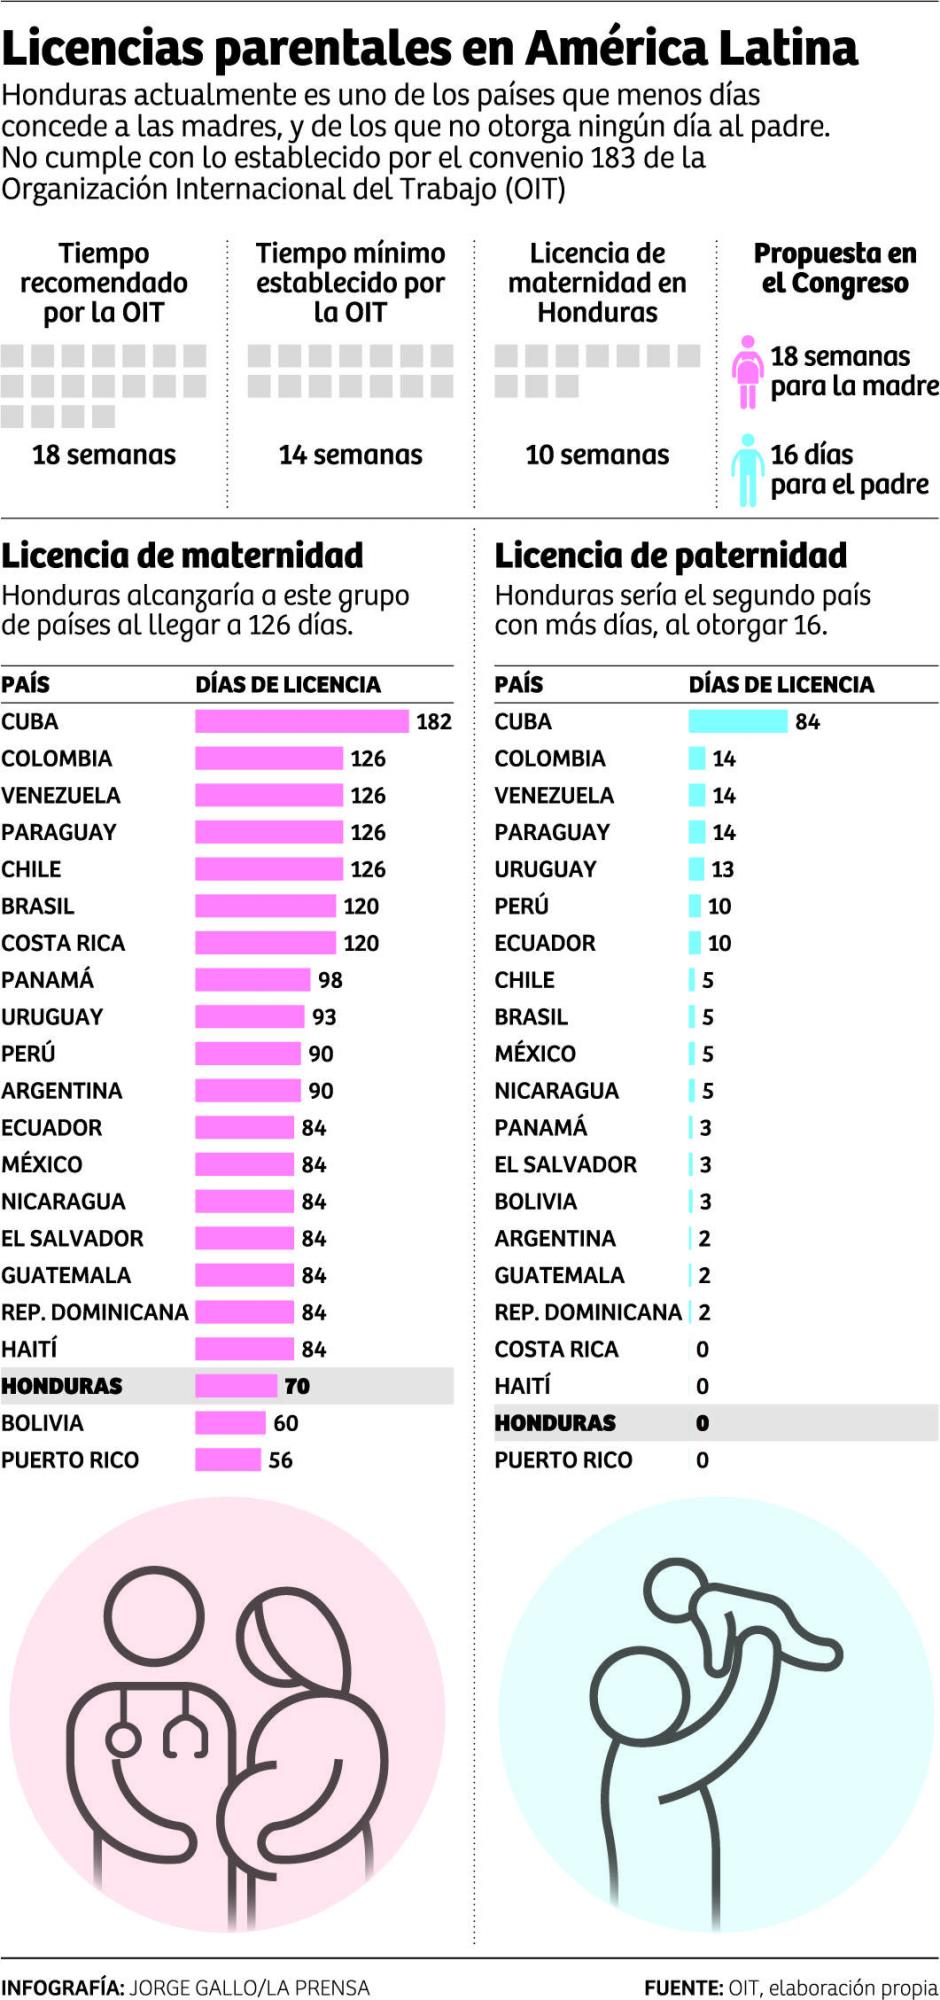 Honduras sería de los países con más días de maternidad